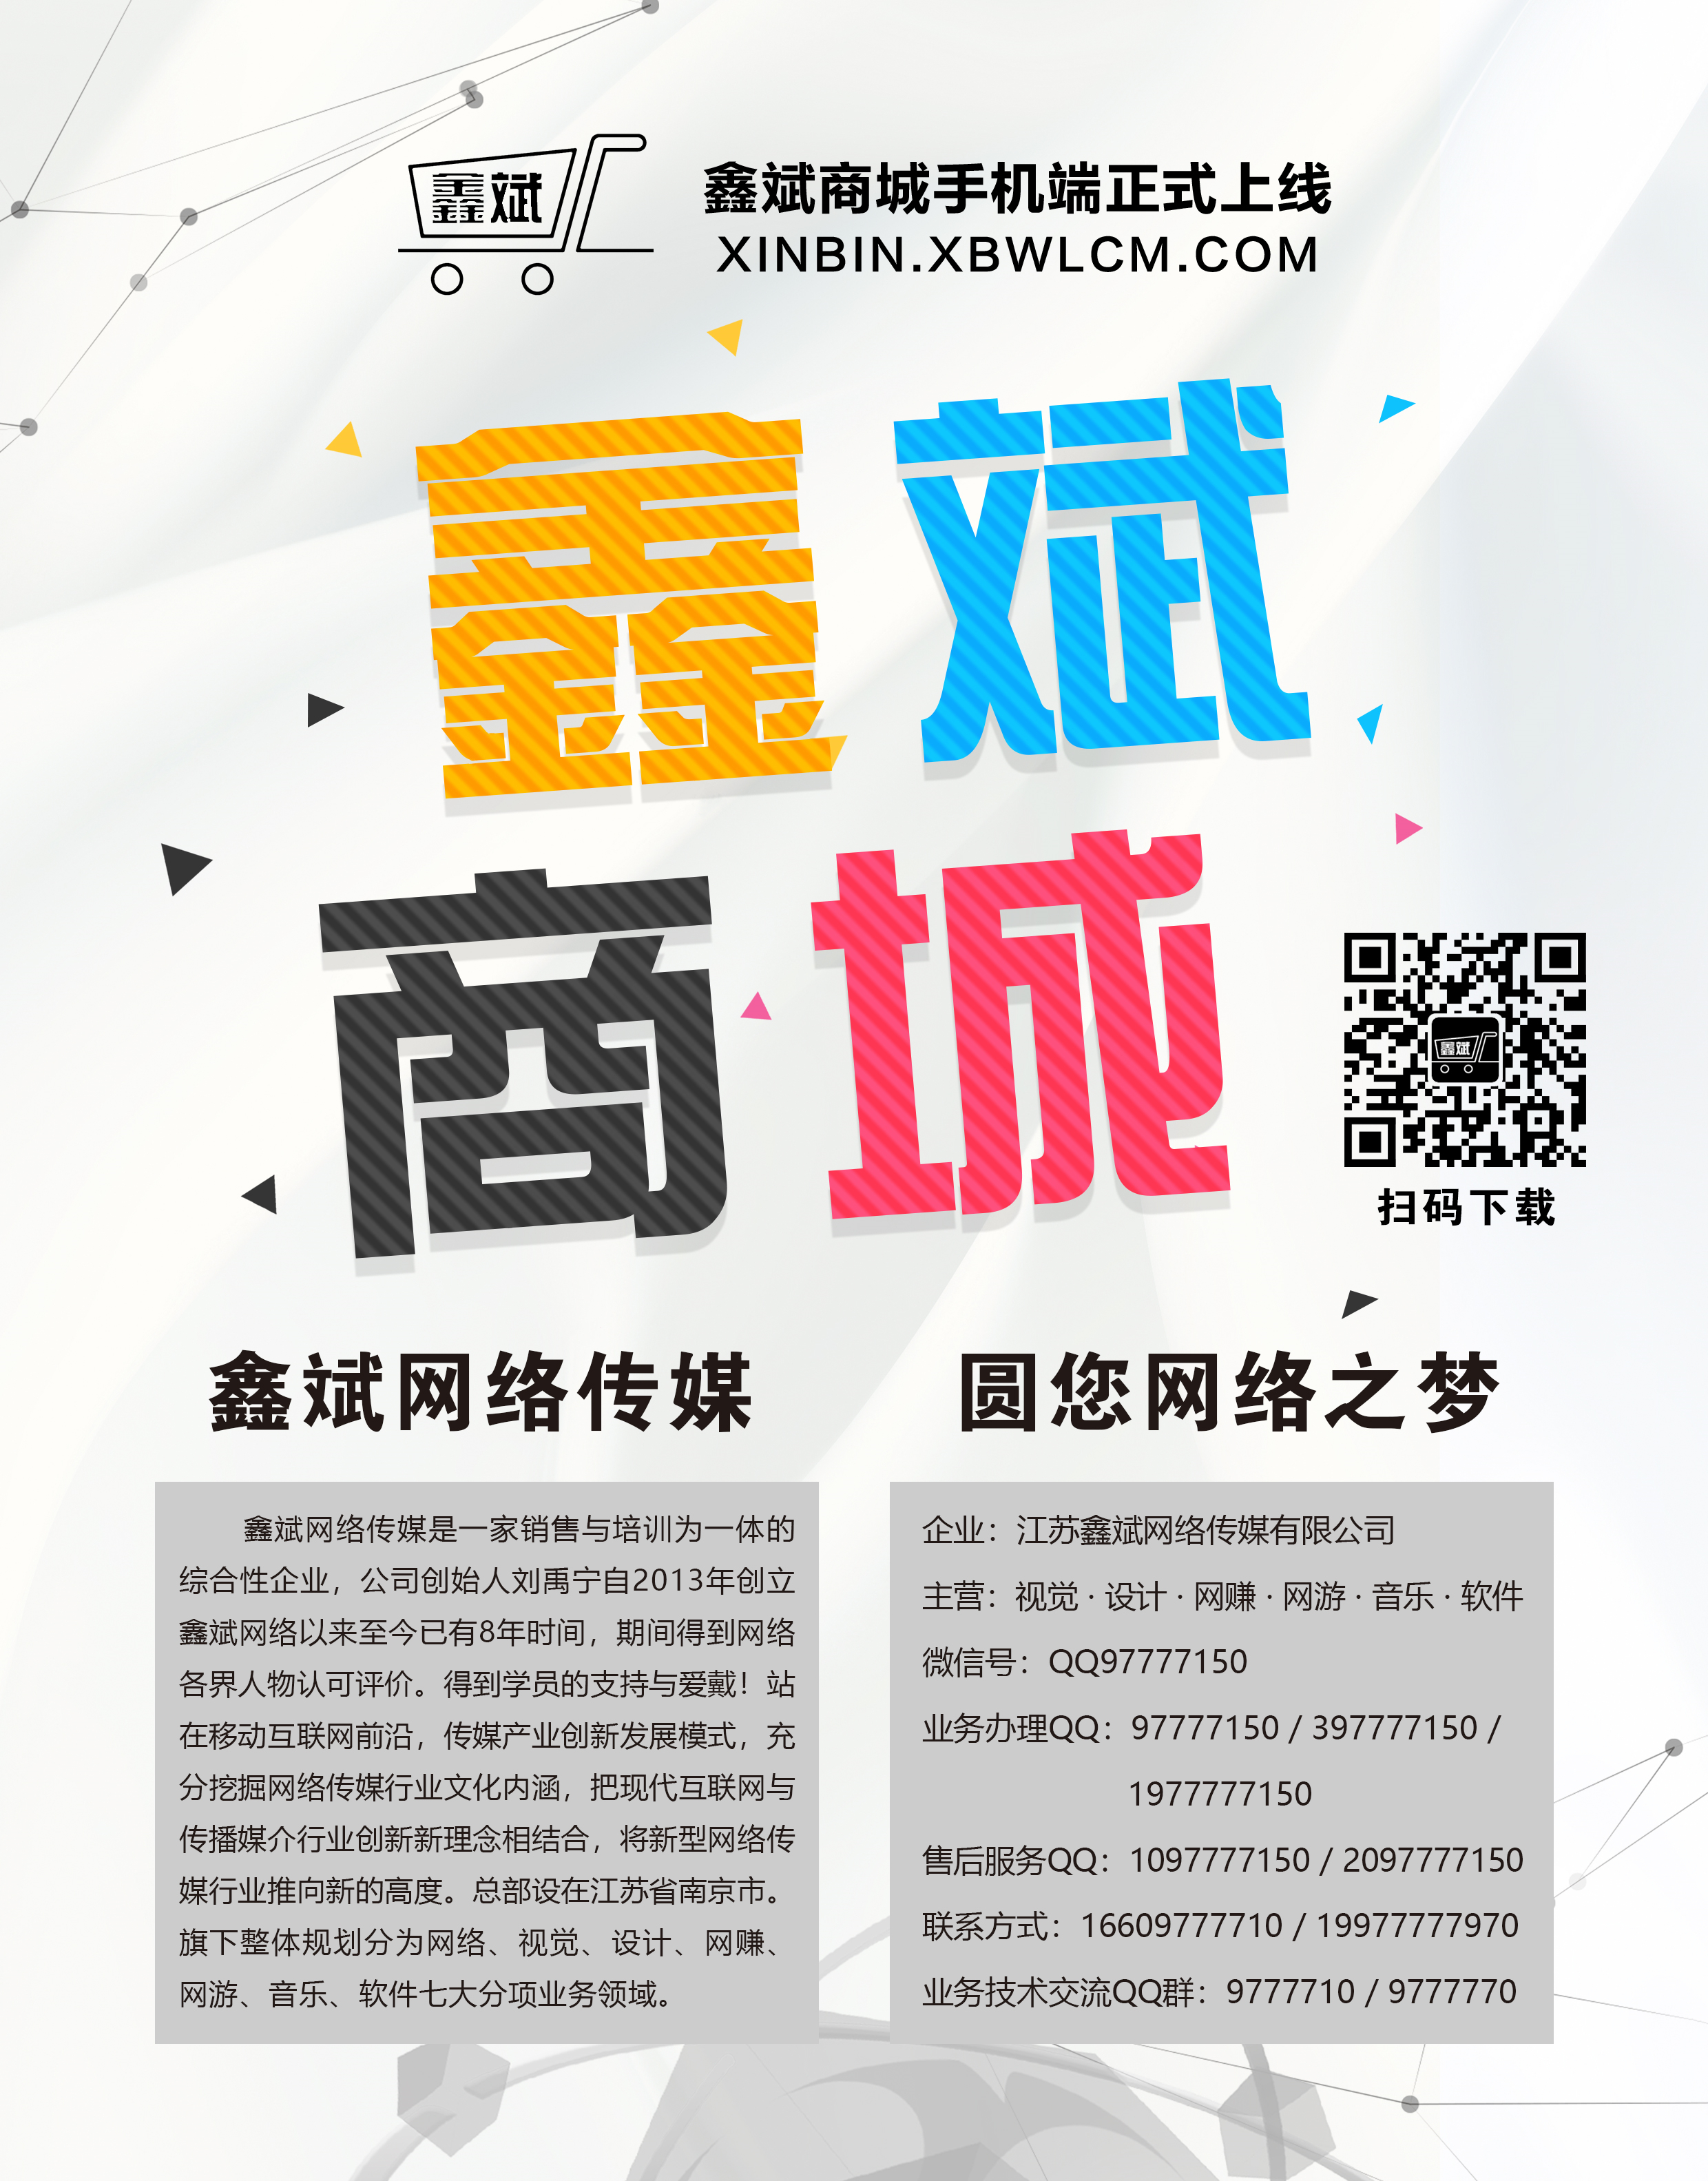 鑫斌商城手机端软件海报